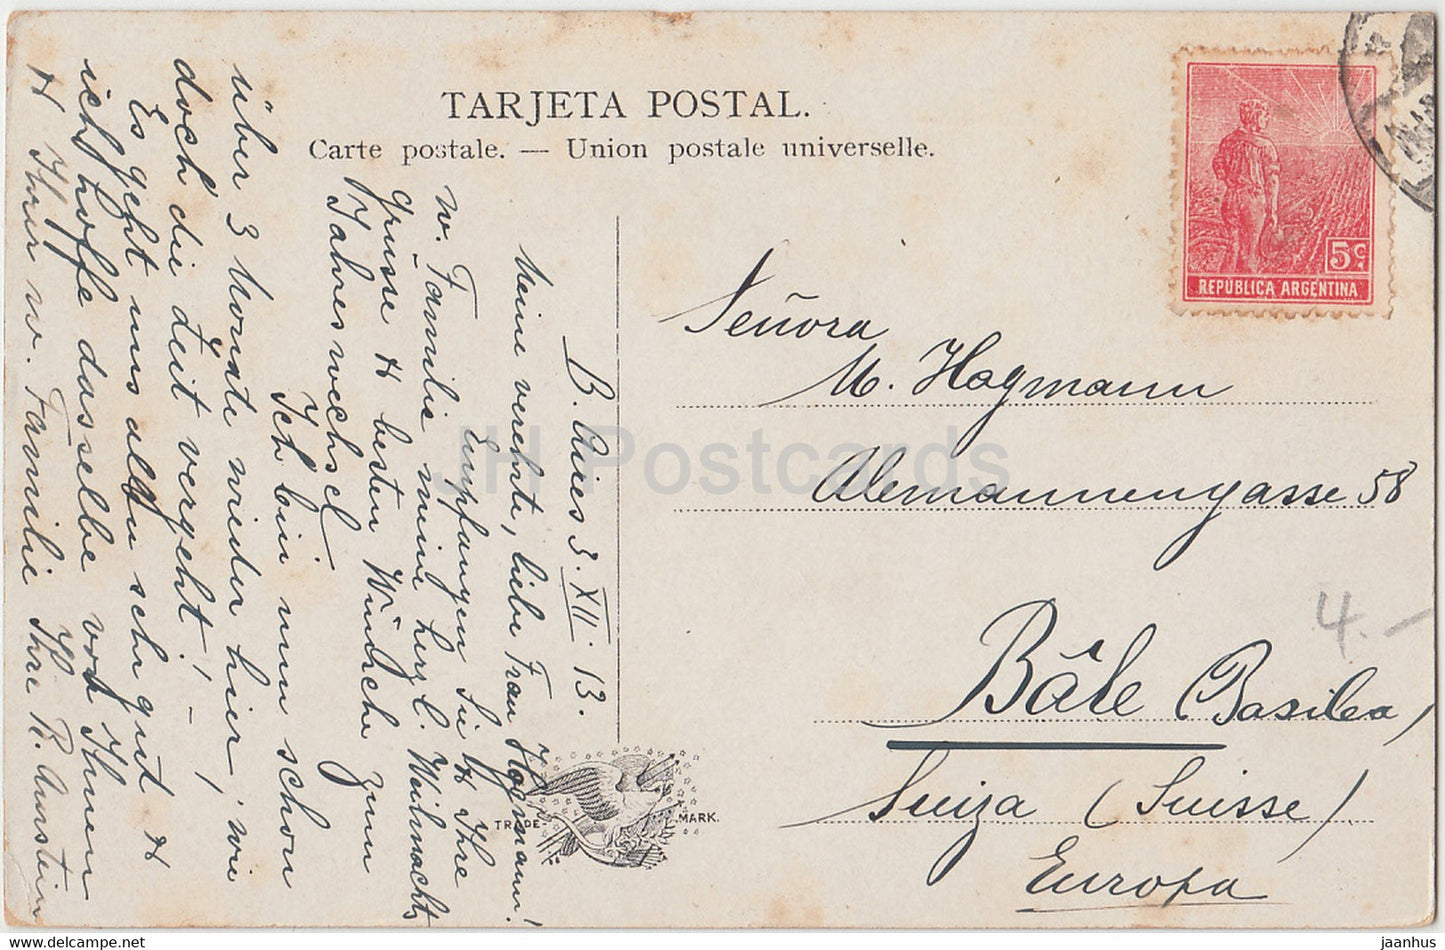 Punta Piedras - Mar del Plata - alte Postkarte - 1913 - Argentinien - gebraucht